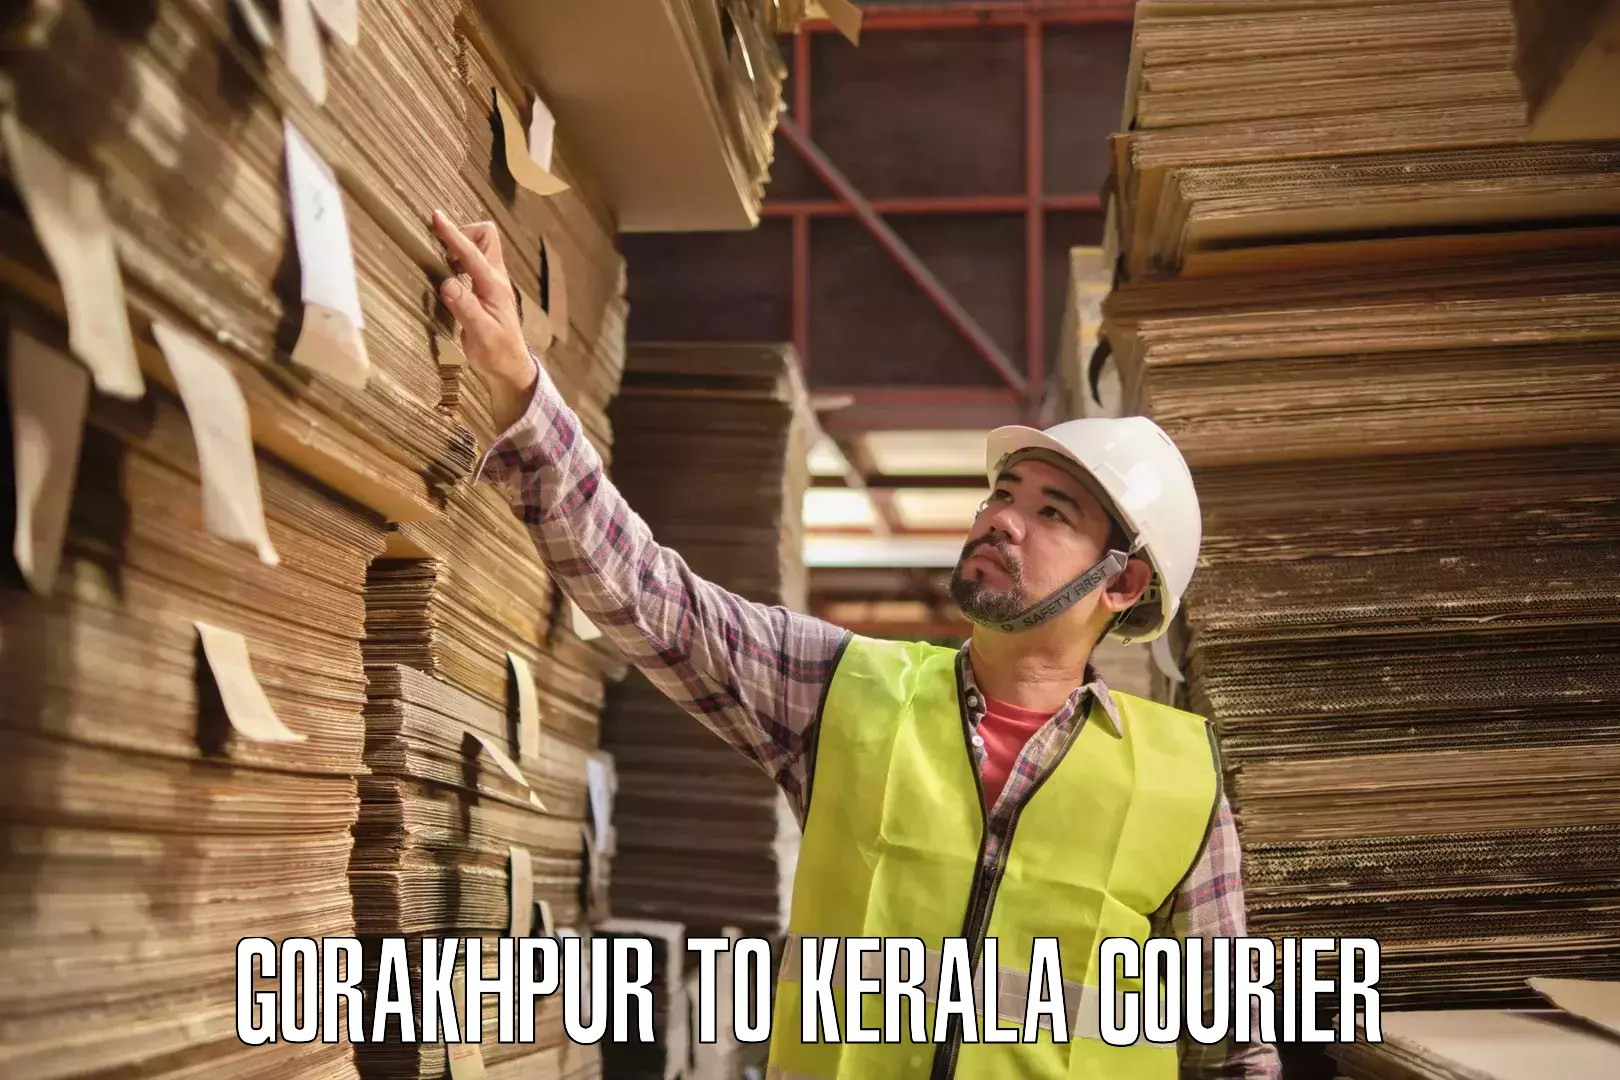 Online courier booking Gorakhpur to Kerala